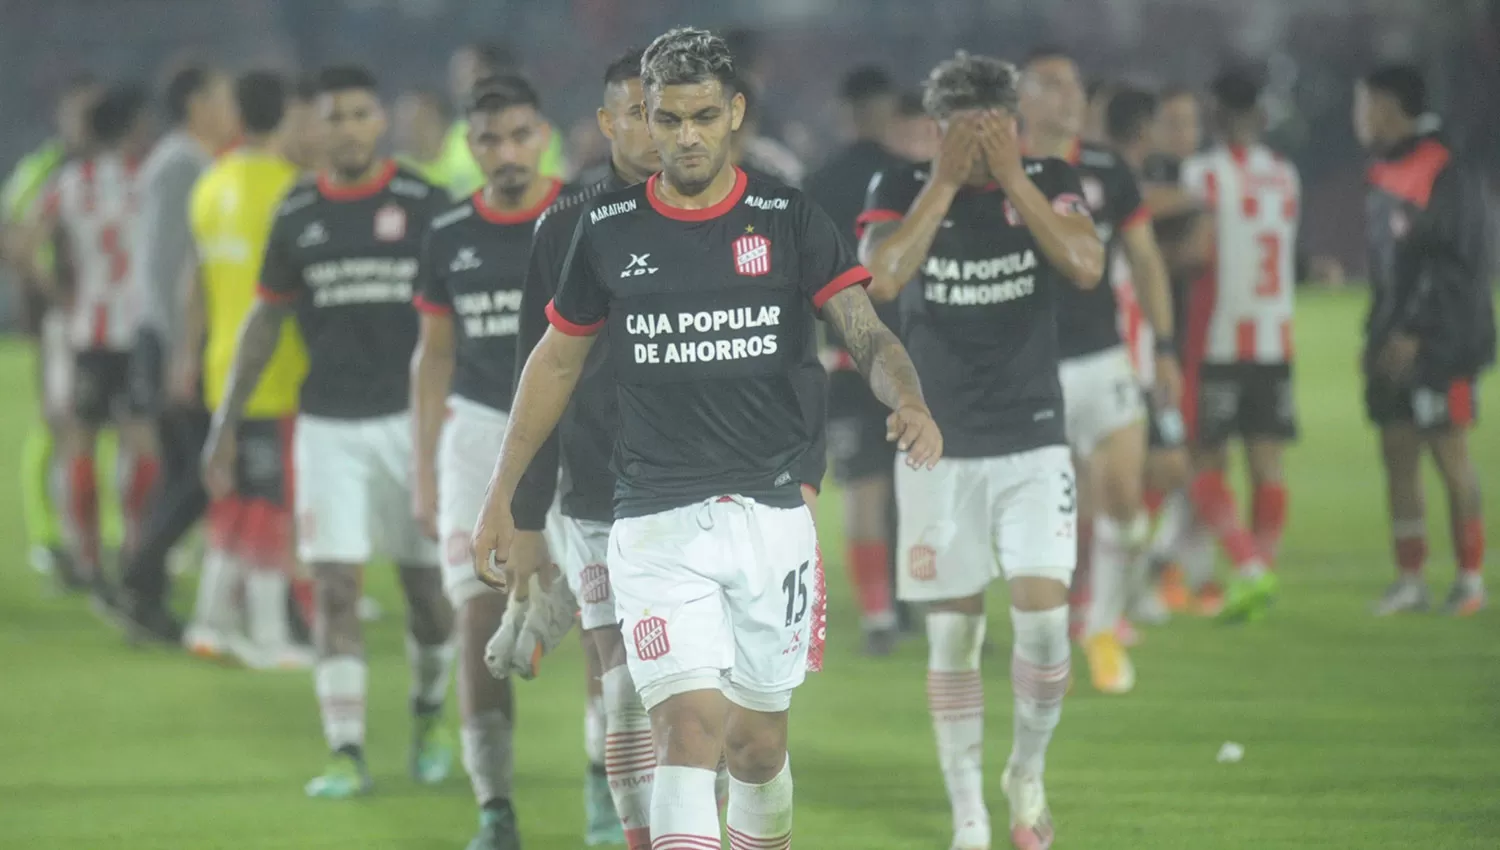 POCO PREMIO. Mauro Bellone encabeza la salida de los jugadores de San Martín, que se fueron insatisfechos con el resultado ante Instituto.